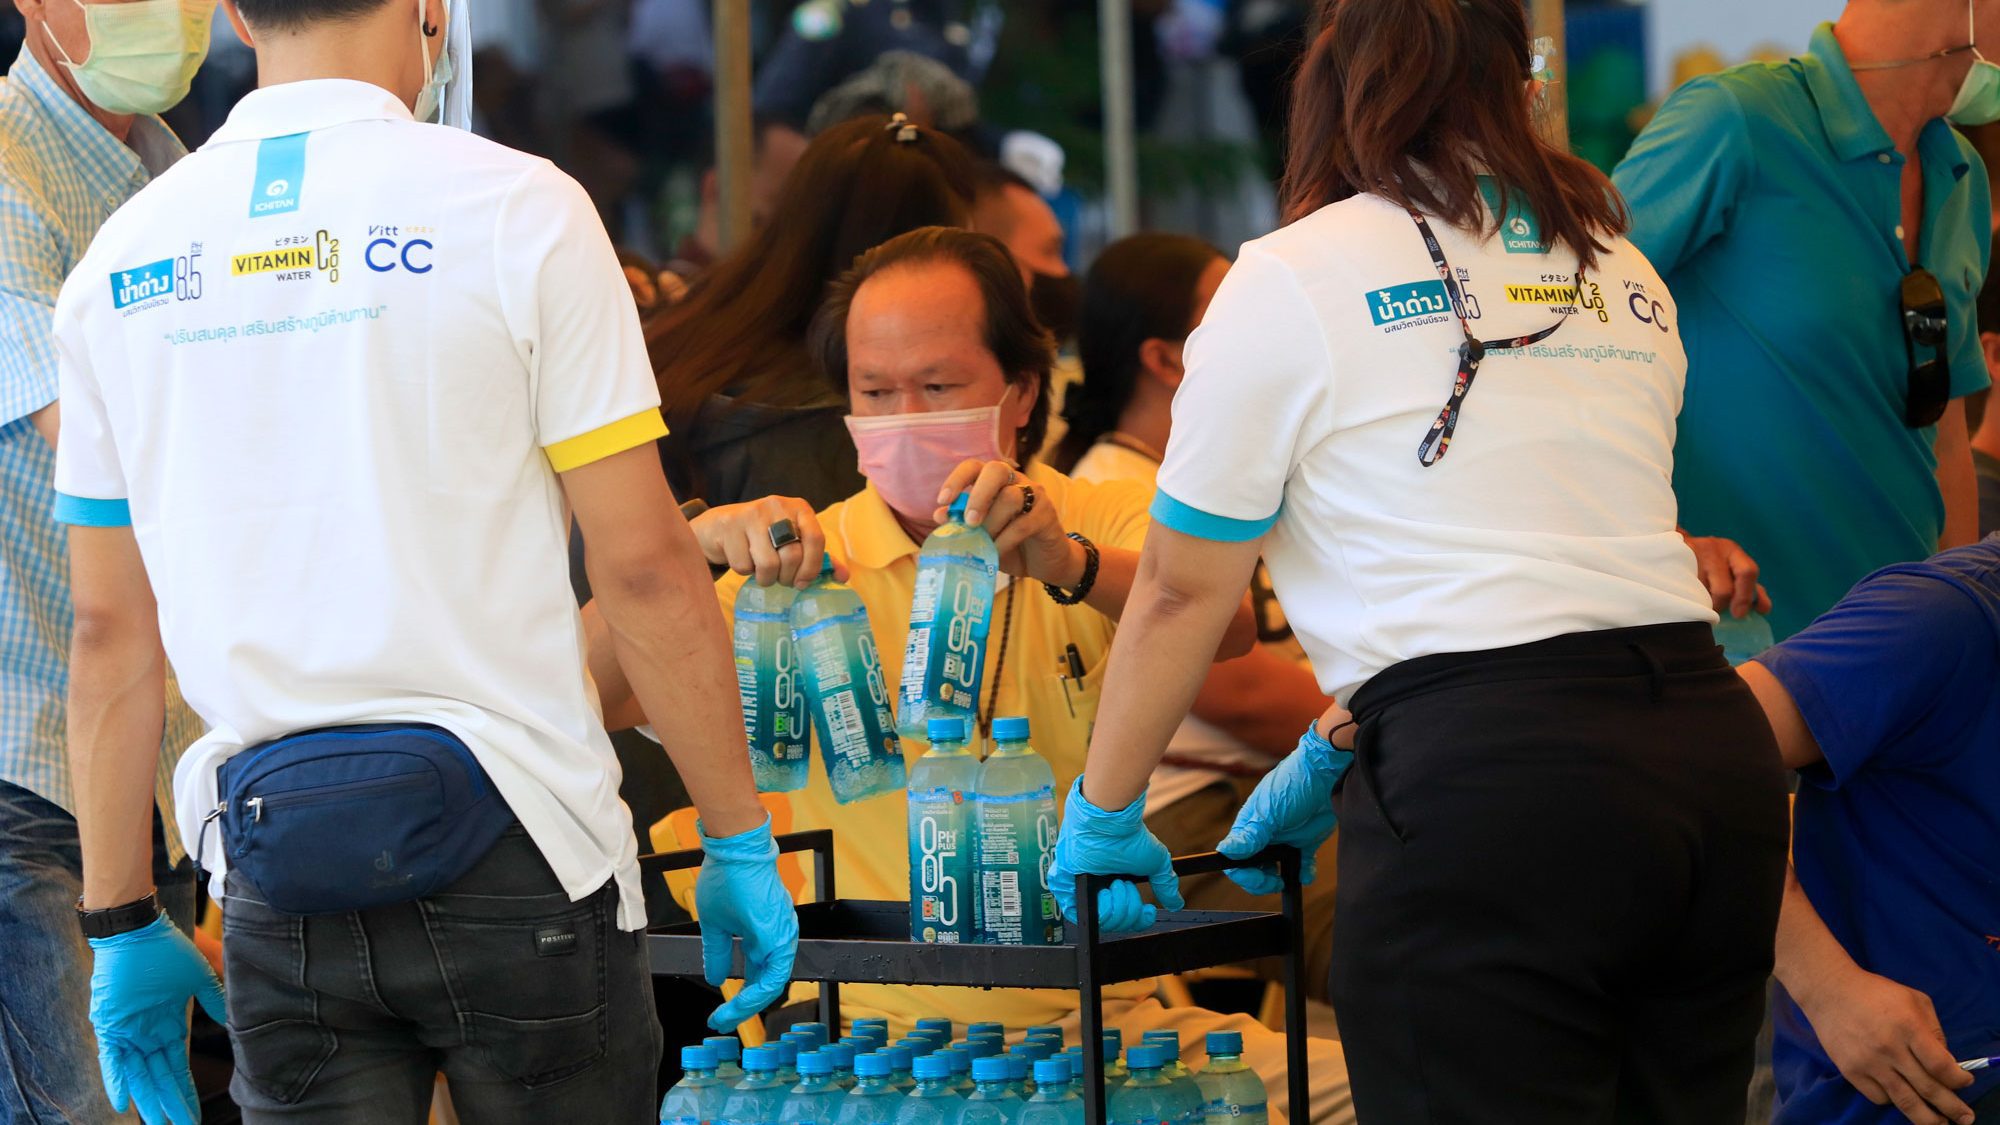 อิชิตัน กรุ๊ป ร่วมใจภาคเอกชน สนับสนุนการปูพรมฉีดวัคซีนต้านโควิด-19 ครั้งใหญ่ ดีเดย์ 7 มิ.ย. มอบอิชิตัน น้ำด่าง 100,000 ขวด ดูแลสุขภาพคนไทย